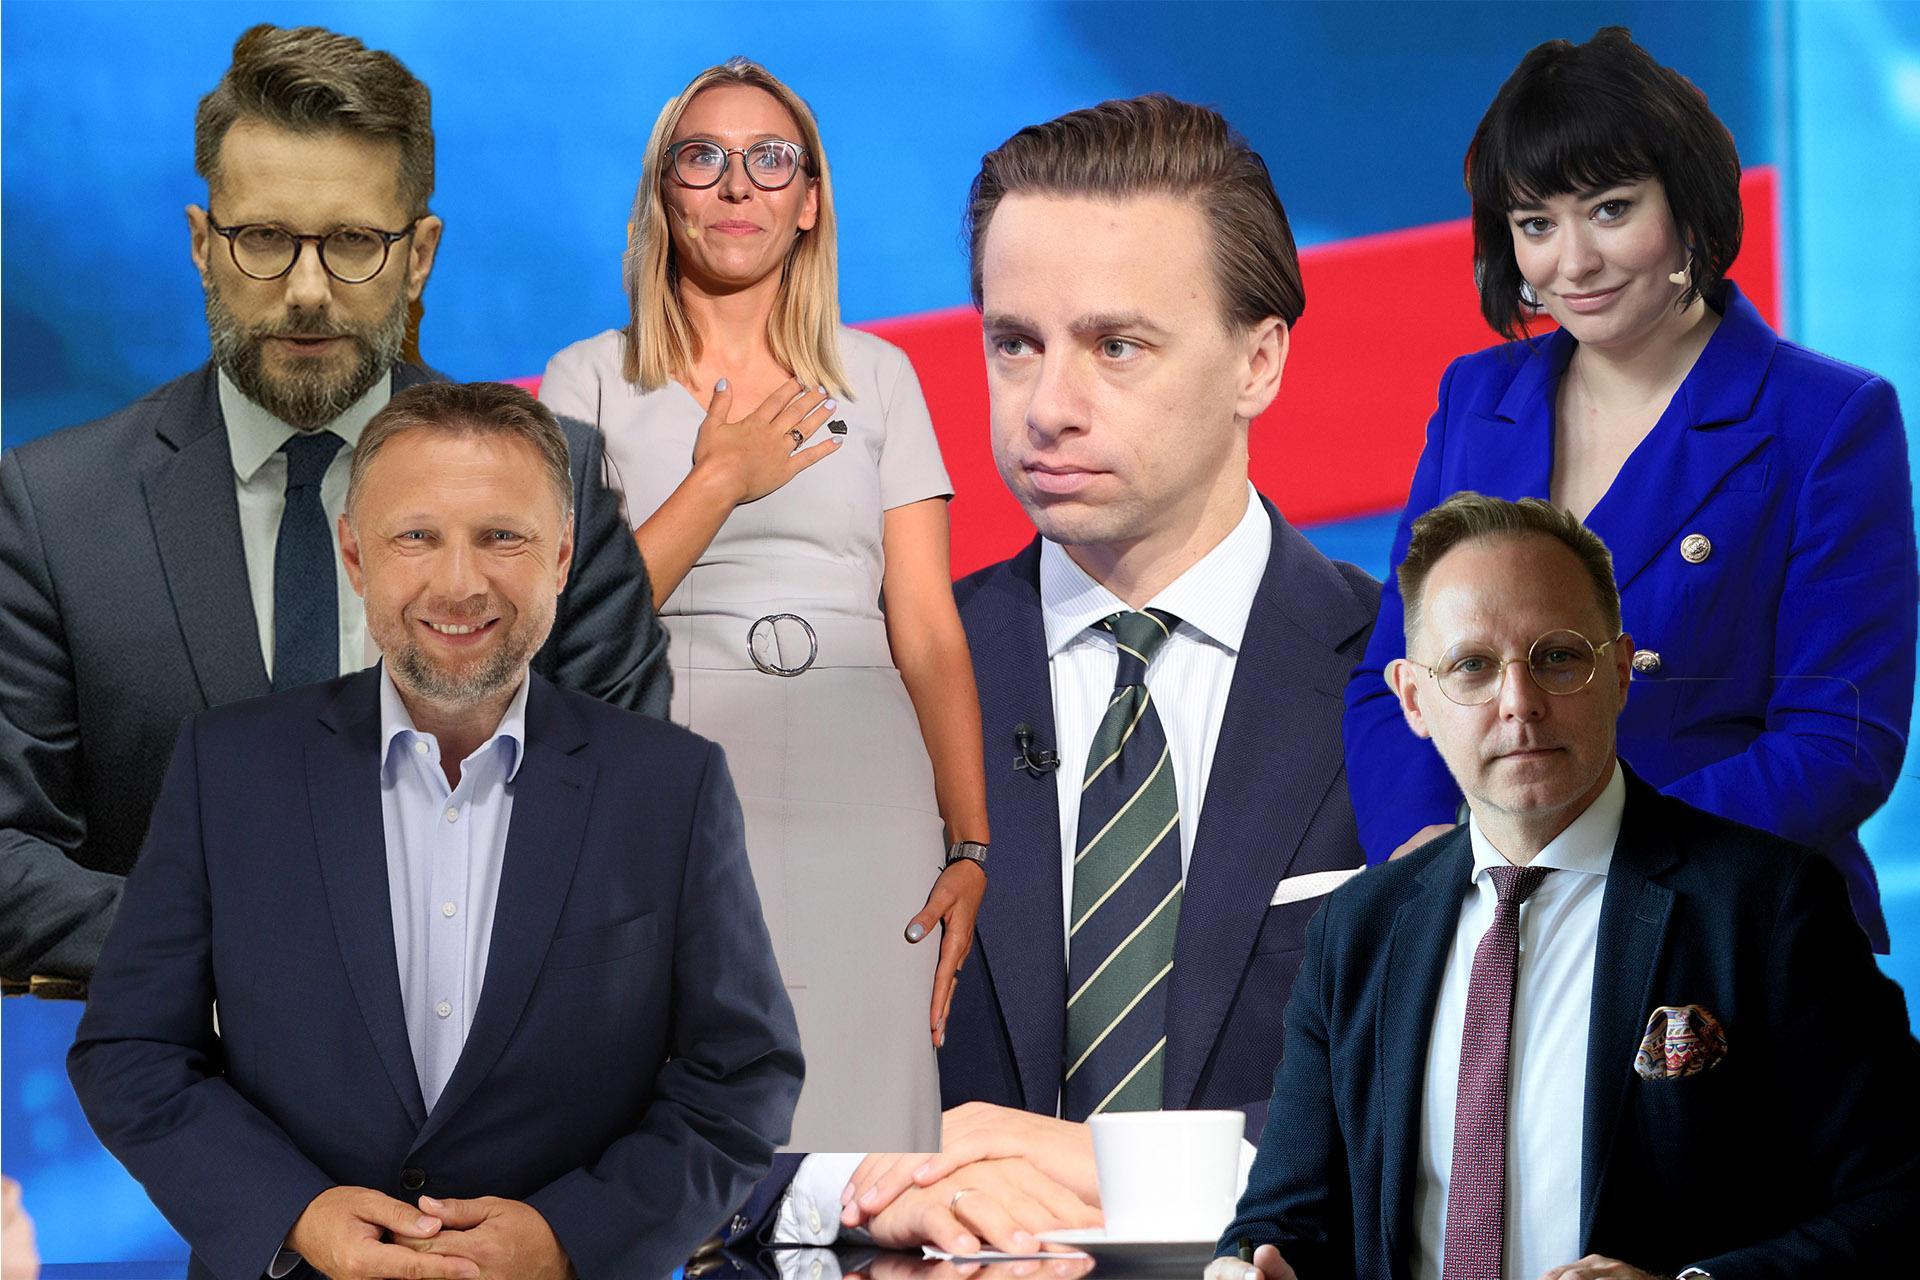 Pojedynek GIGANTÓW! Kto wygrał debatę "Najważniejsze wybory" Super Expressu i Polskiego Radia 24? GŁOSUJ!